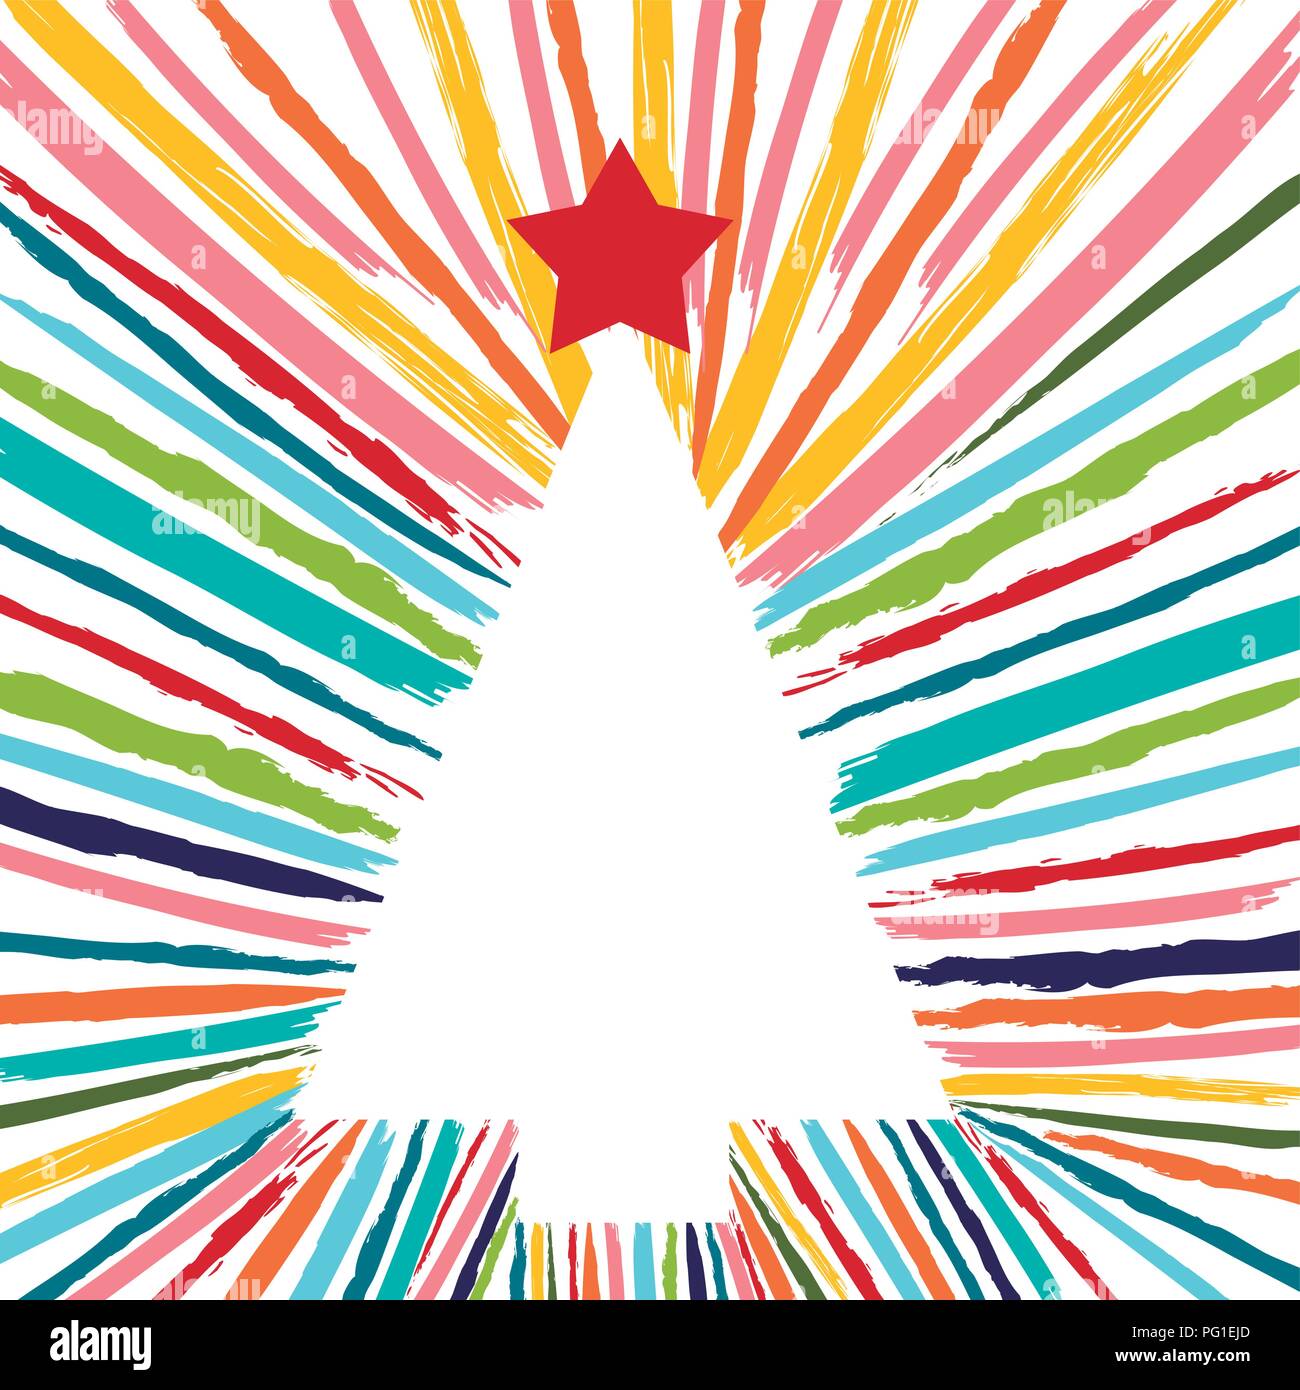 Joyeux Noël coloré design carte de vœux de noël couleur fun avec pine tree fait du grunge coups de pinceau à la main. Vecteur EPS10 Illustration de Vecteur